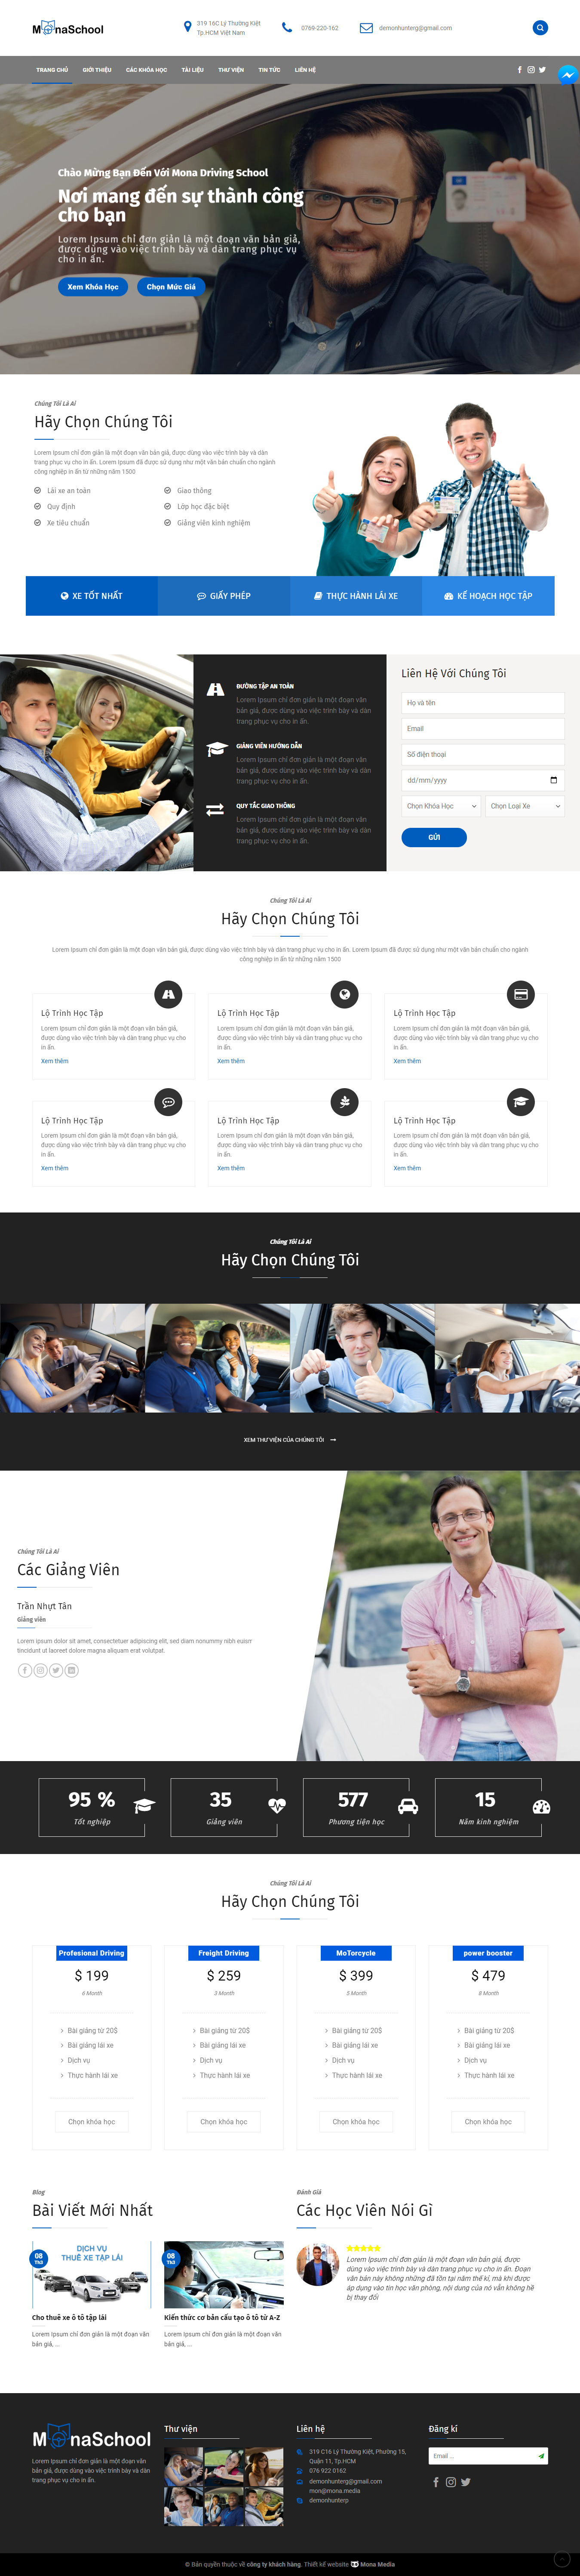 Mẫu website trung tâm dạy lái xe hiện đại, đẹp mắt